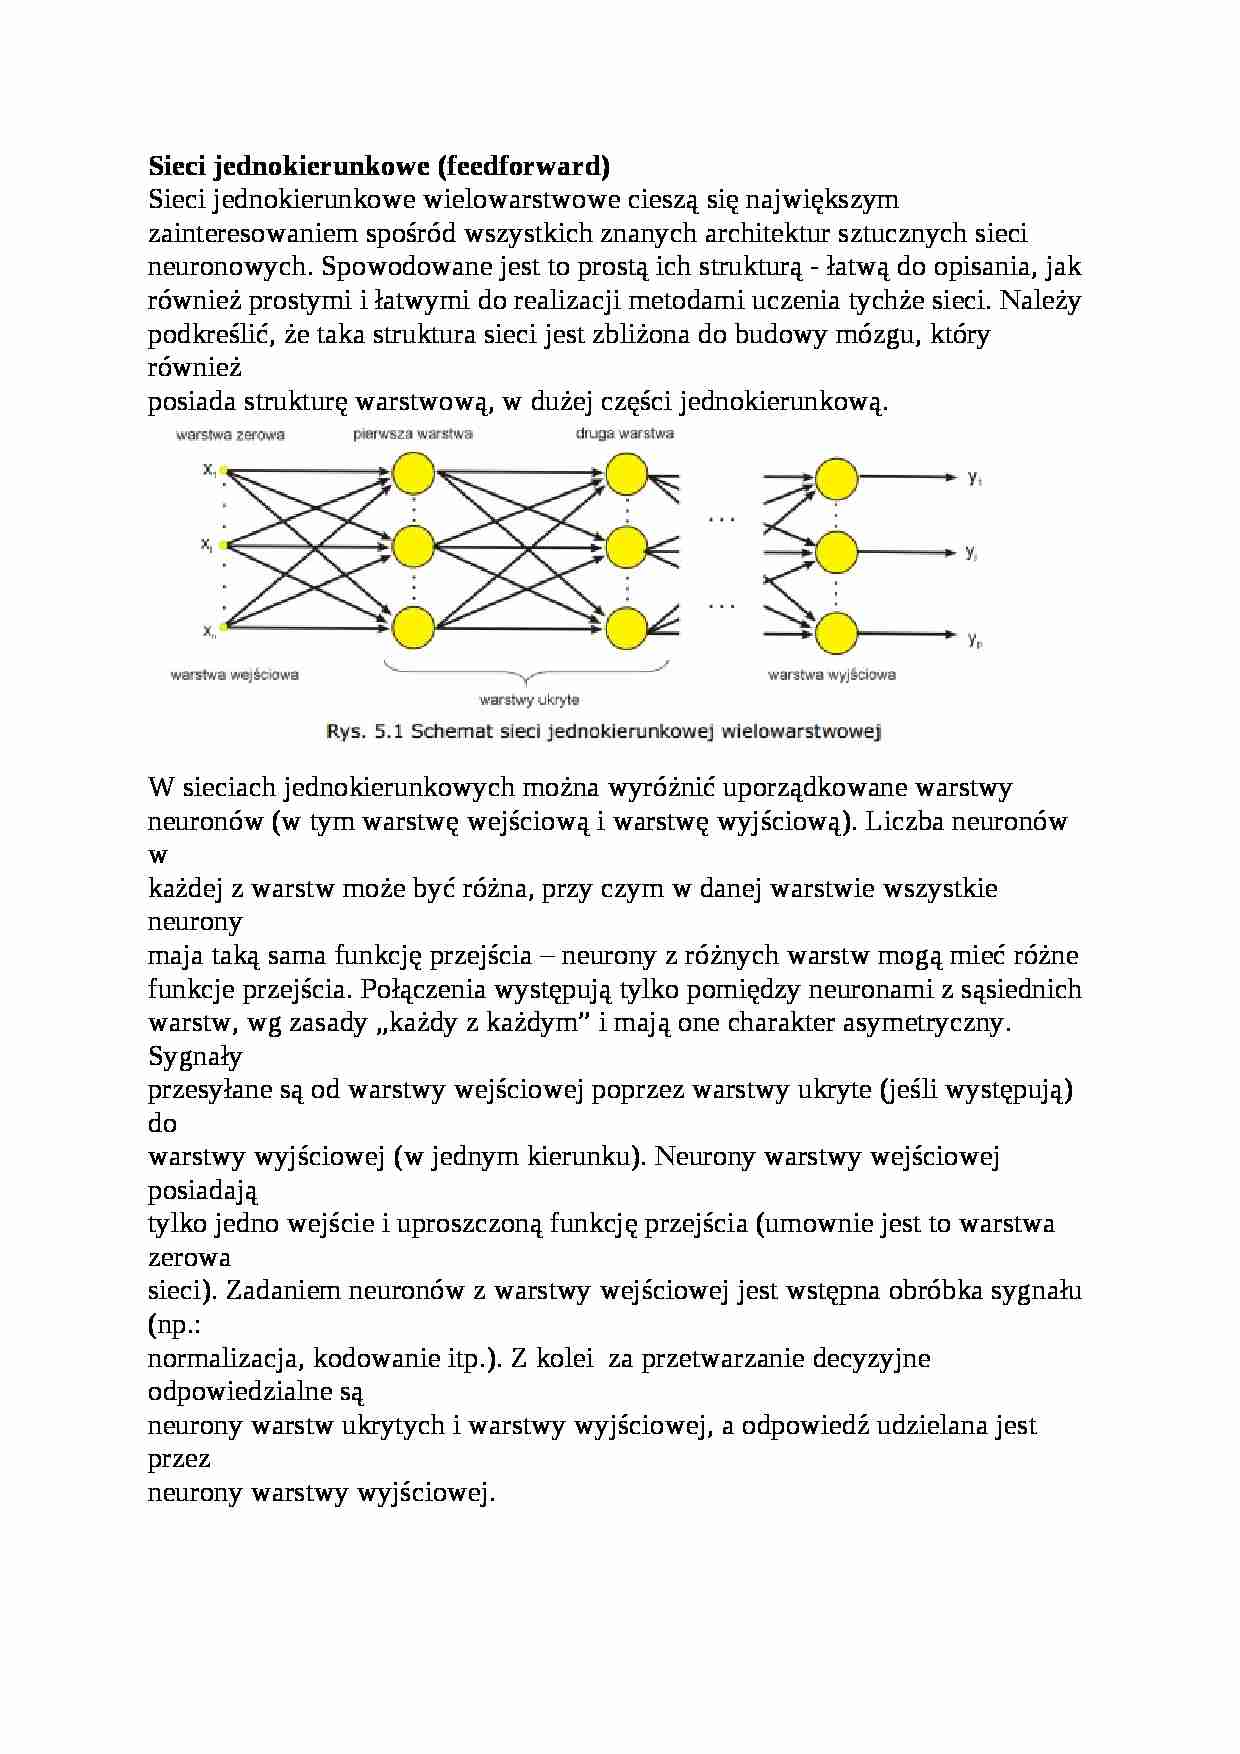 Sieci jednokierunkowe (feedforward) - strona 1